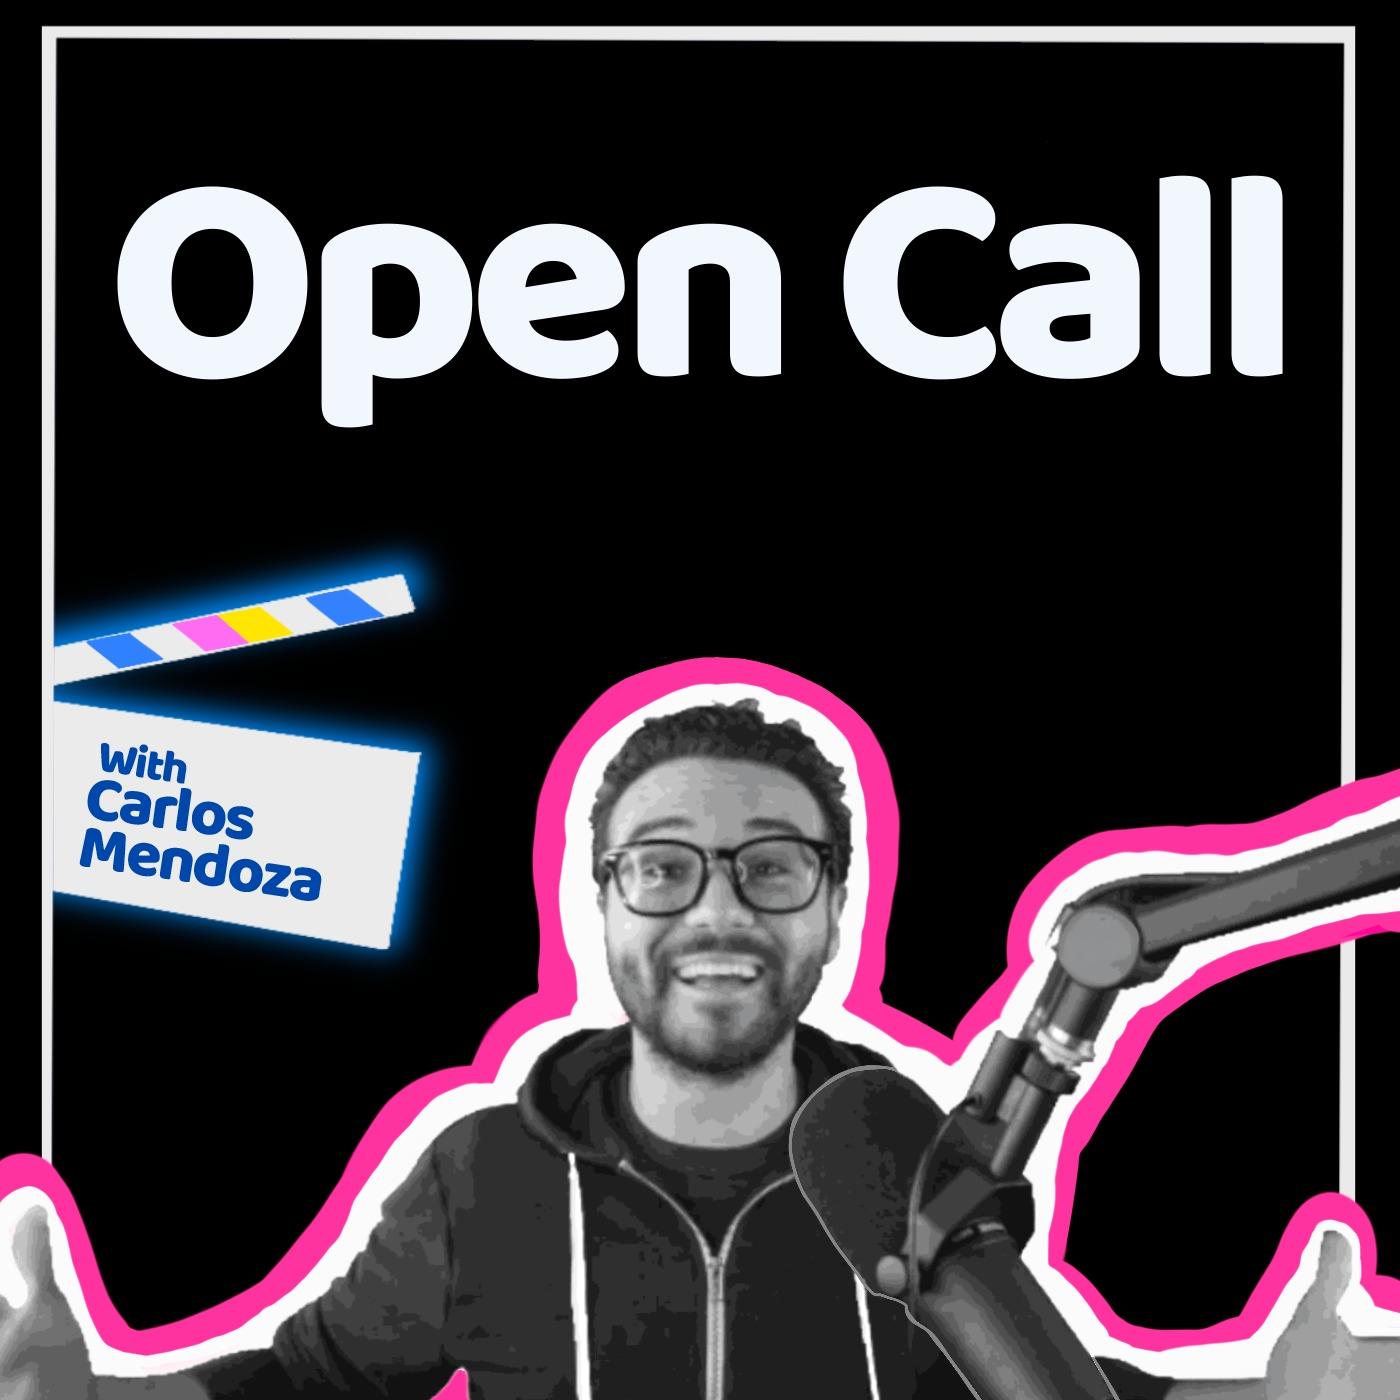 Open Call with Carlos Mendoza